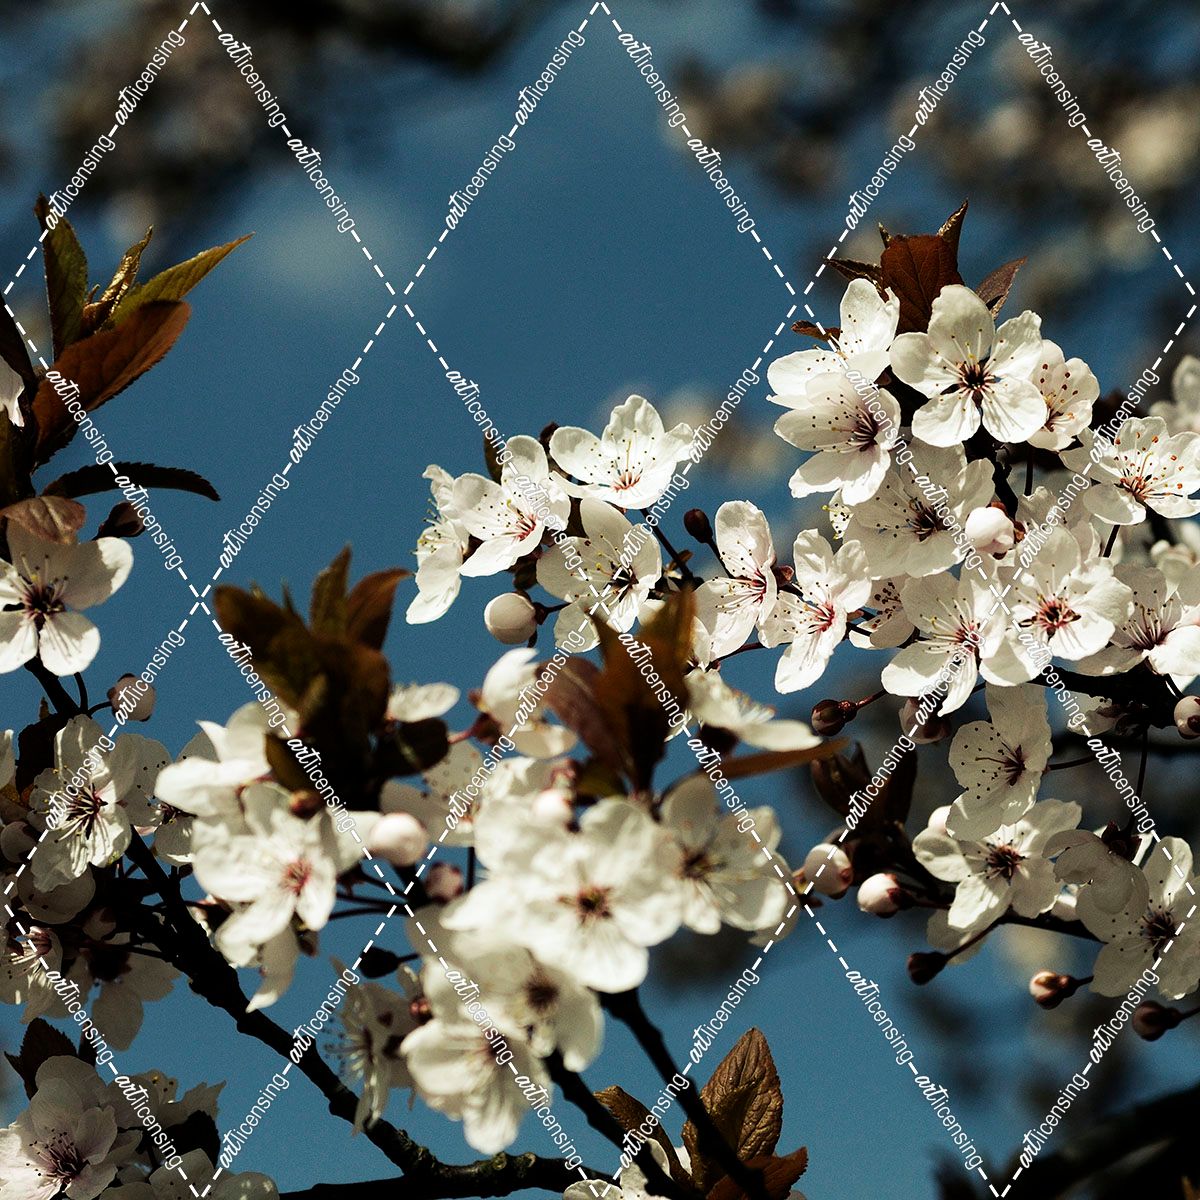 Spring Blossom on Tree 004